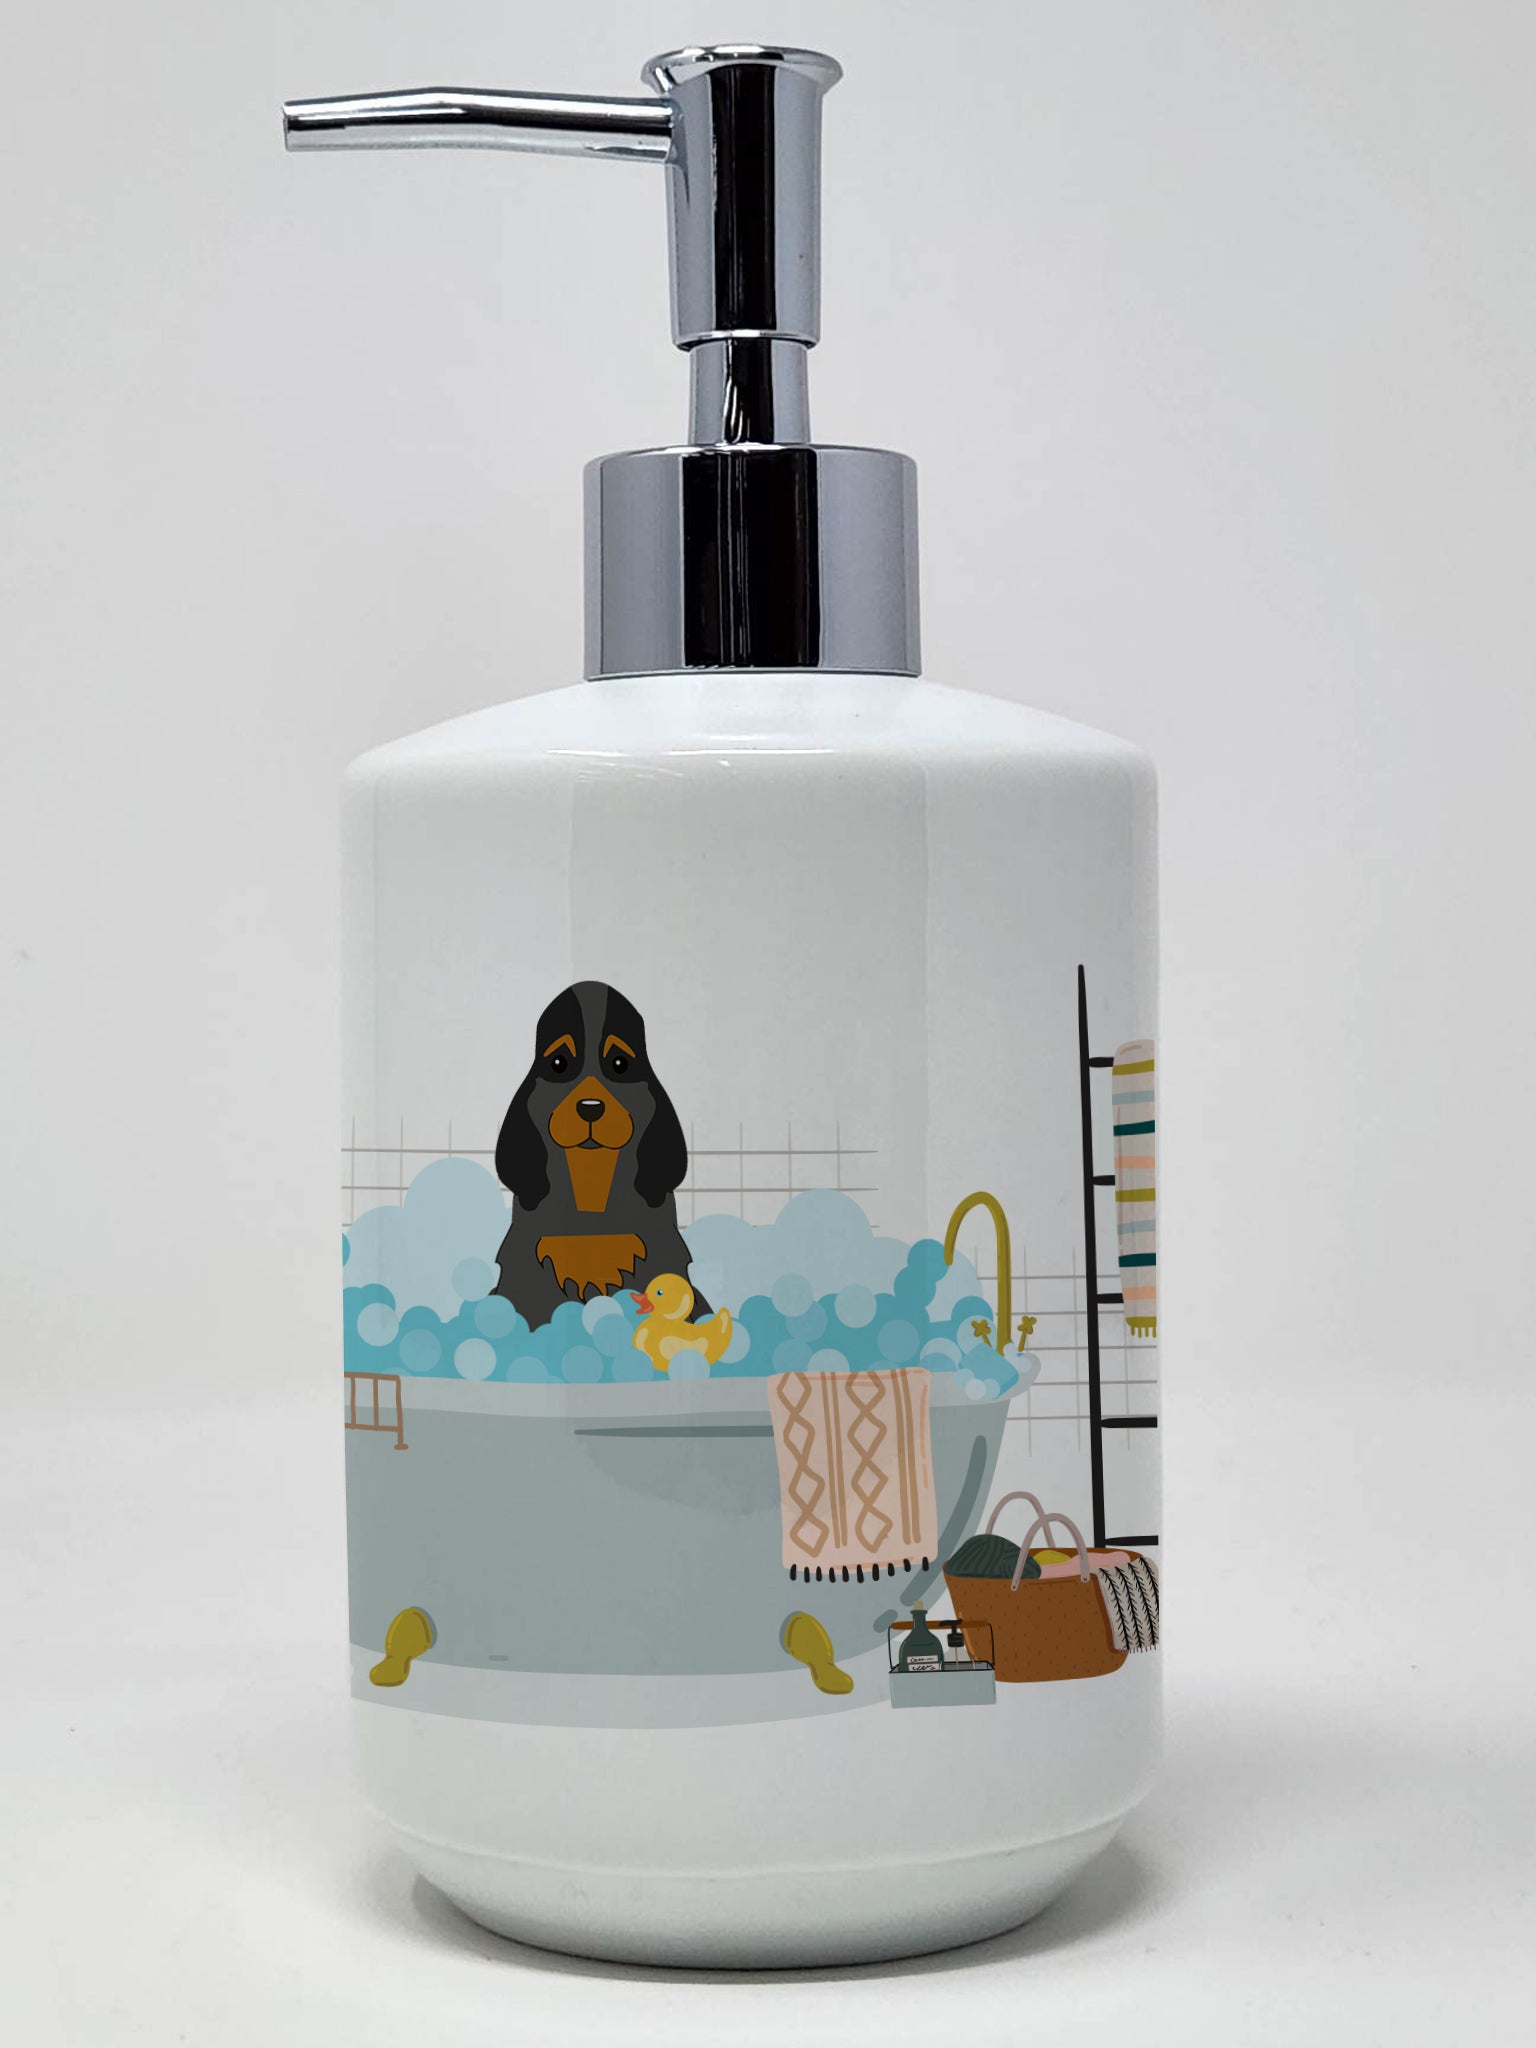 Buy this Black Tan Cocker Spaniel in Bathtub Ceramic Soap Dispenser